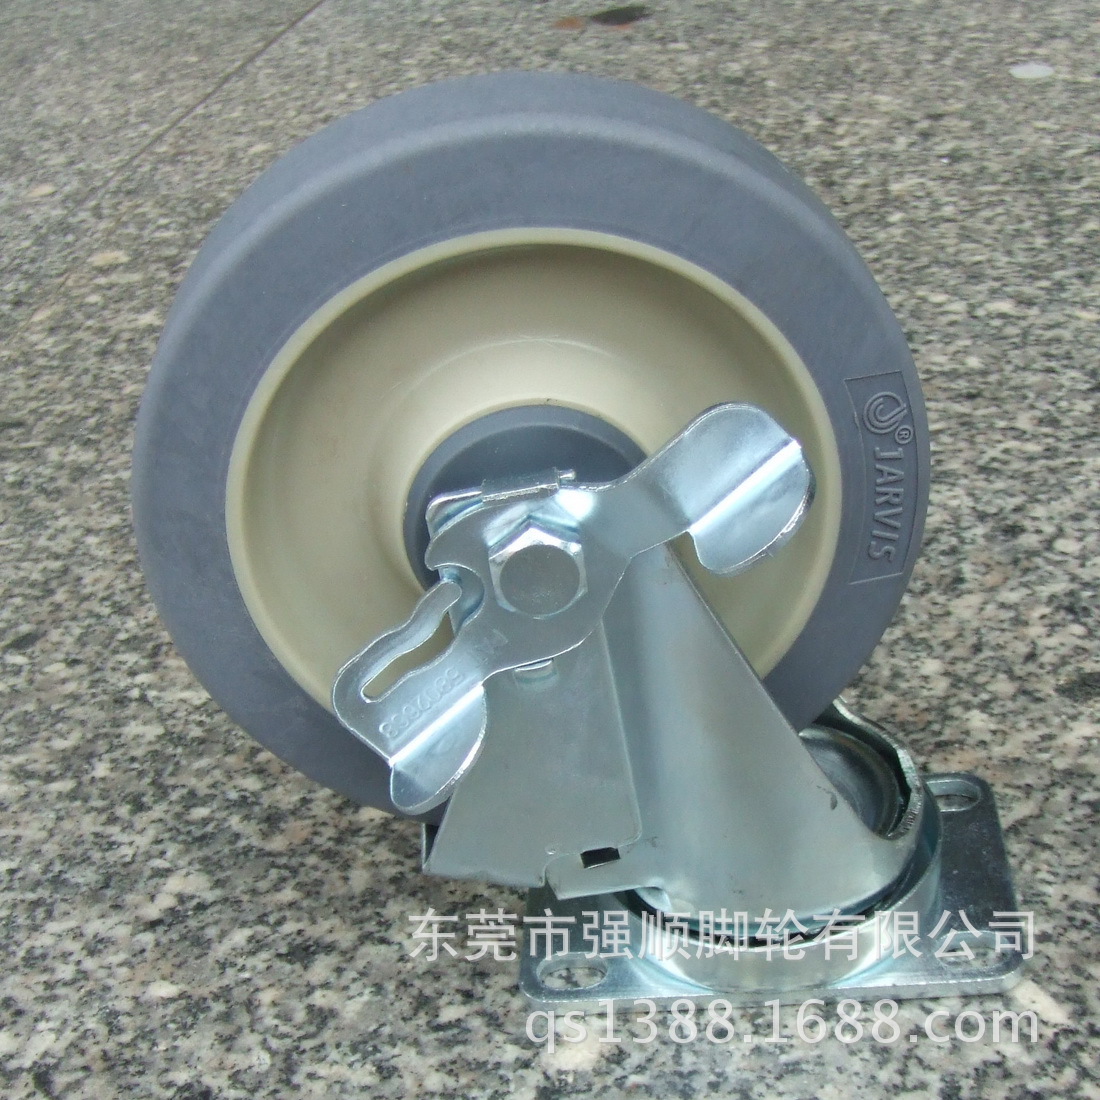 佳威工业脚轮20系列-5寸手推车专用消音人造胶轮万向轮示例图6